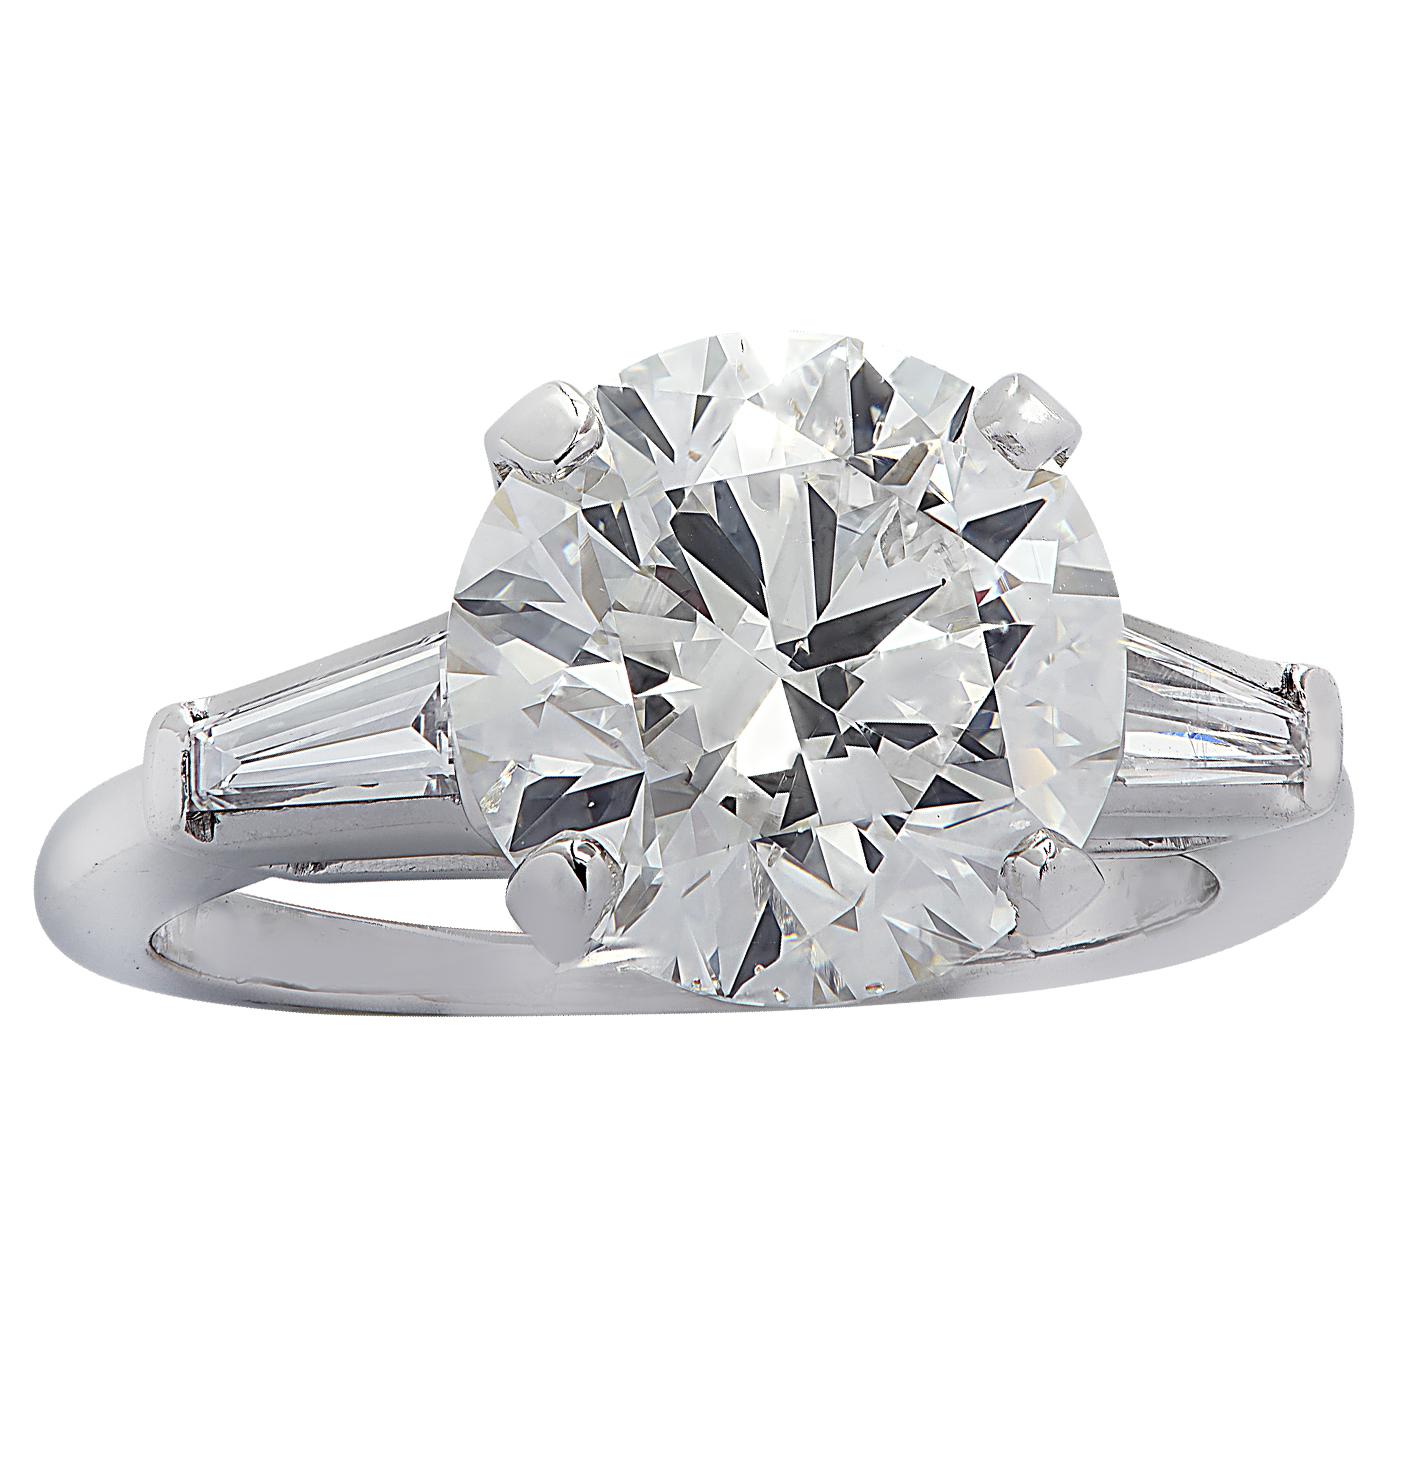 Modern Vivid Diamonds GIA Certified 3.92 Carat Diamond Engagement Ring